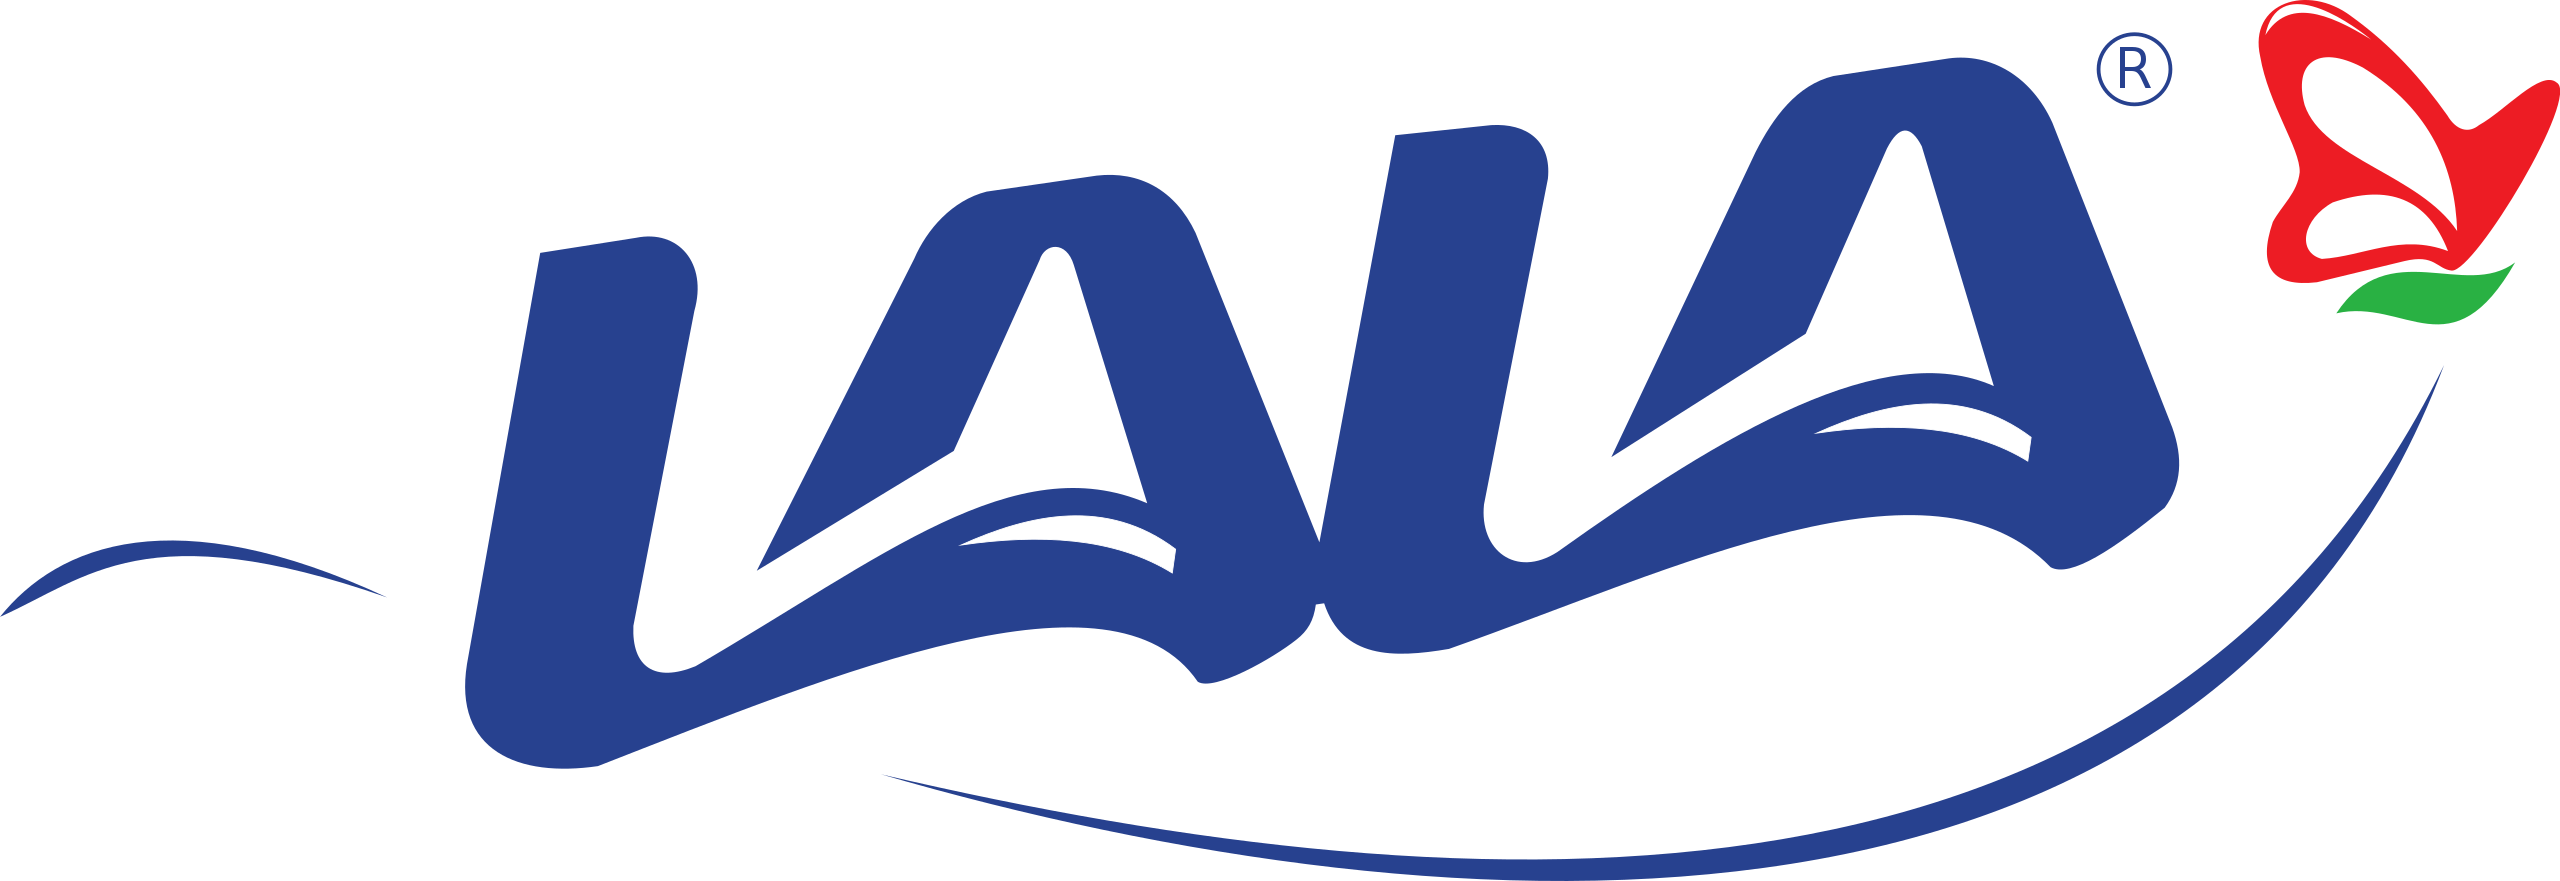 Logo - Grupo Lala.png